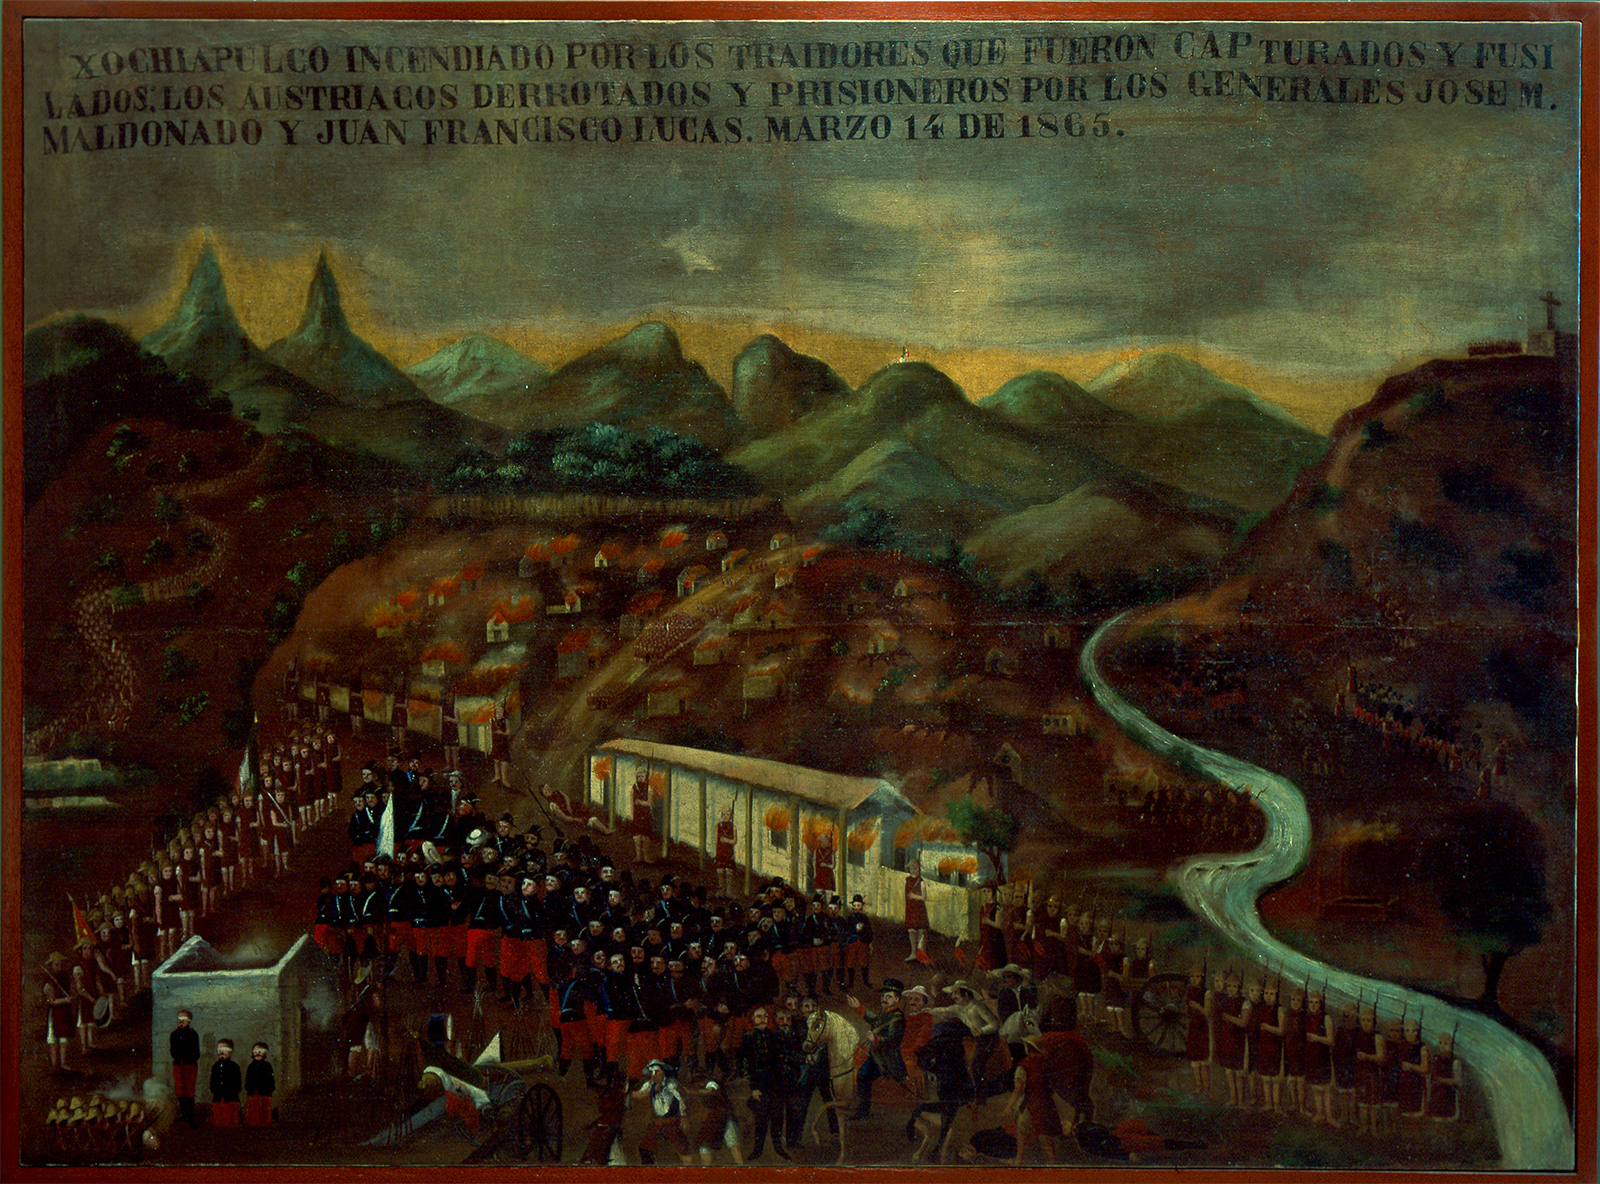 Batalla de Xochiapulco